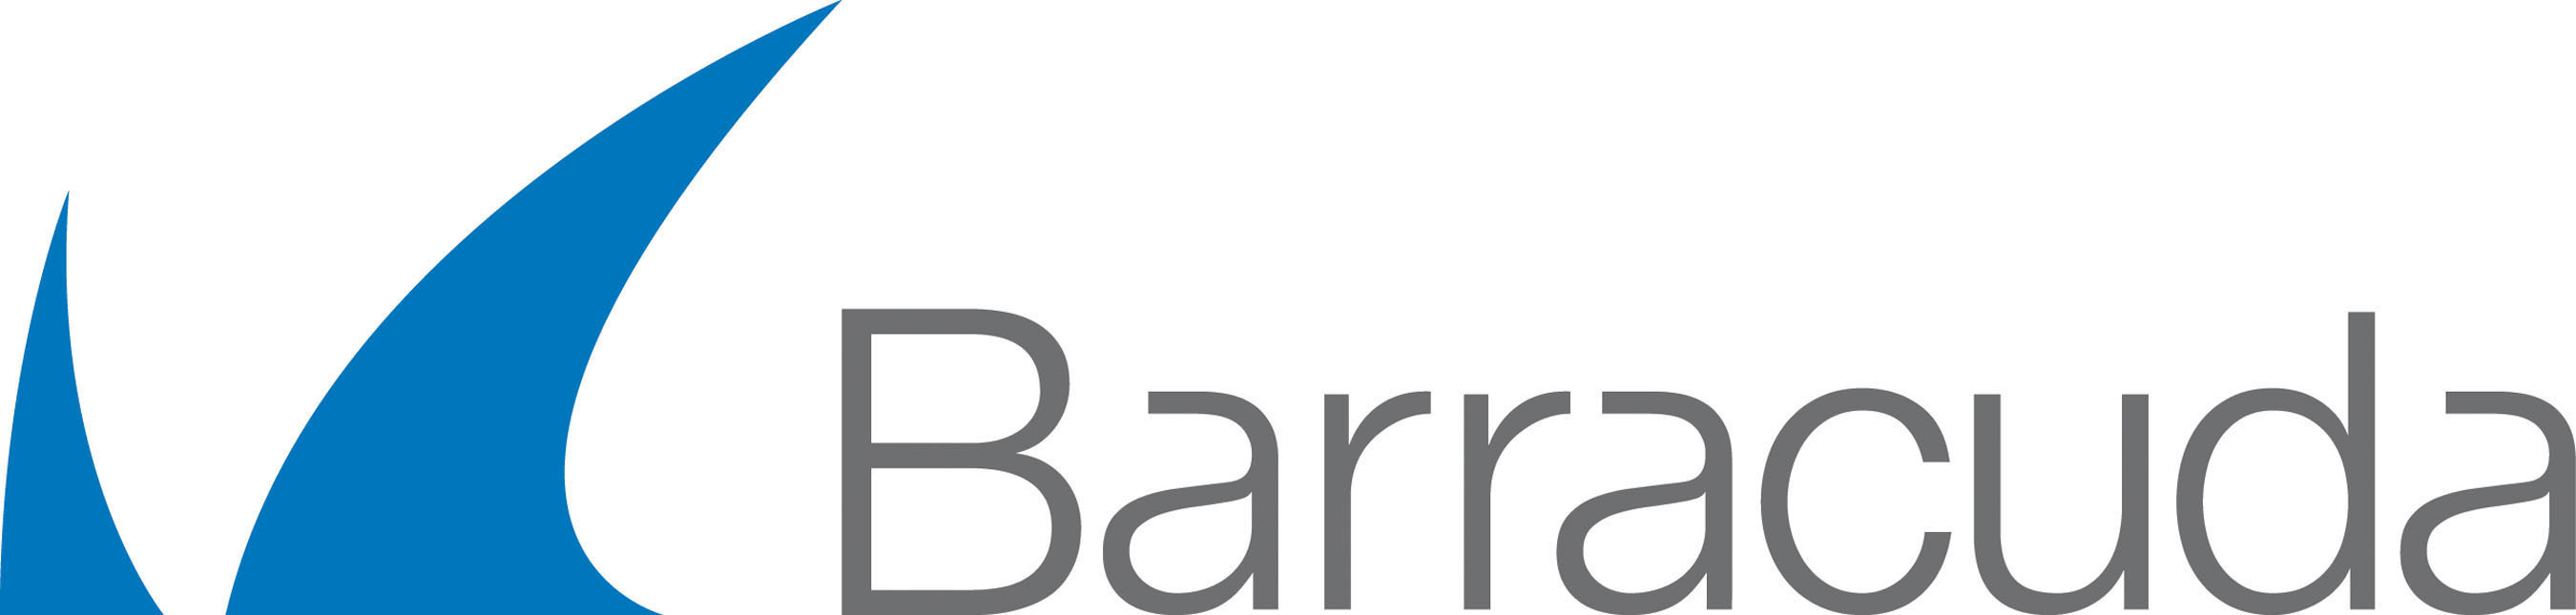 Barracuda Warranty/Support - Extended Warranty - 1 Month - Warranty